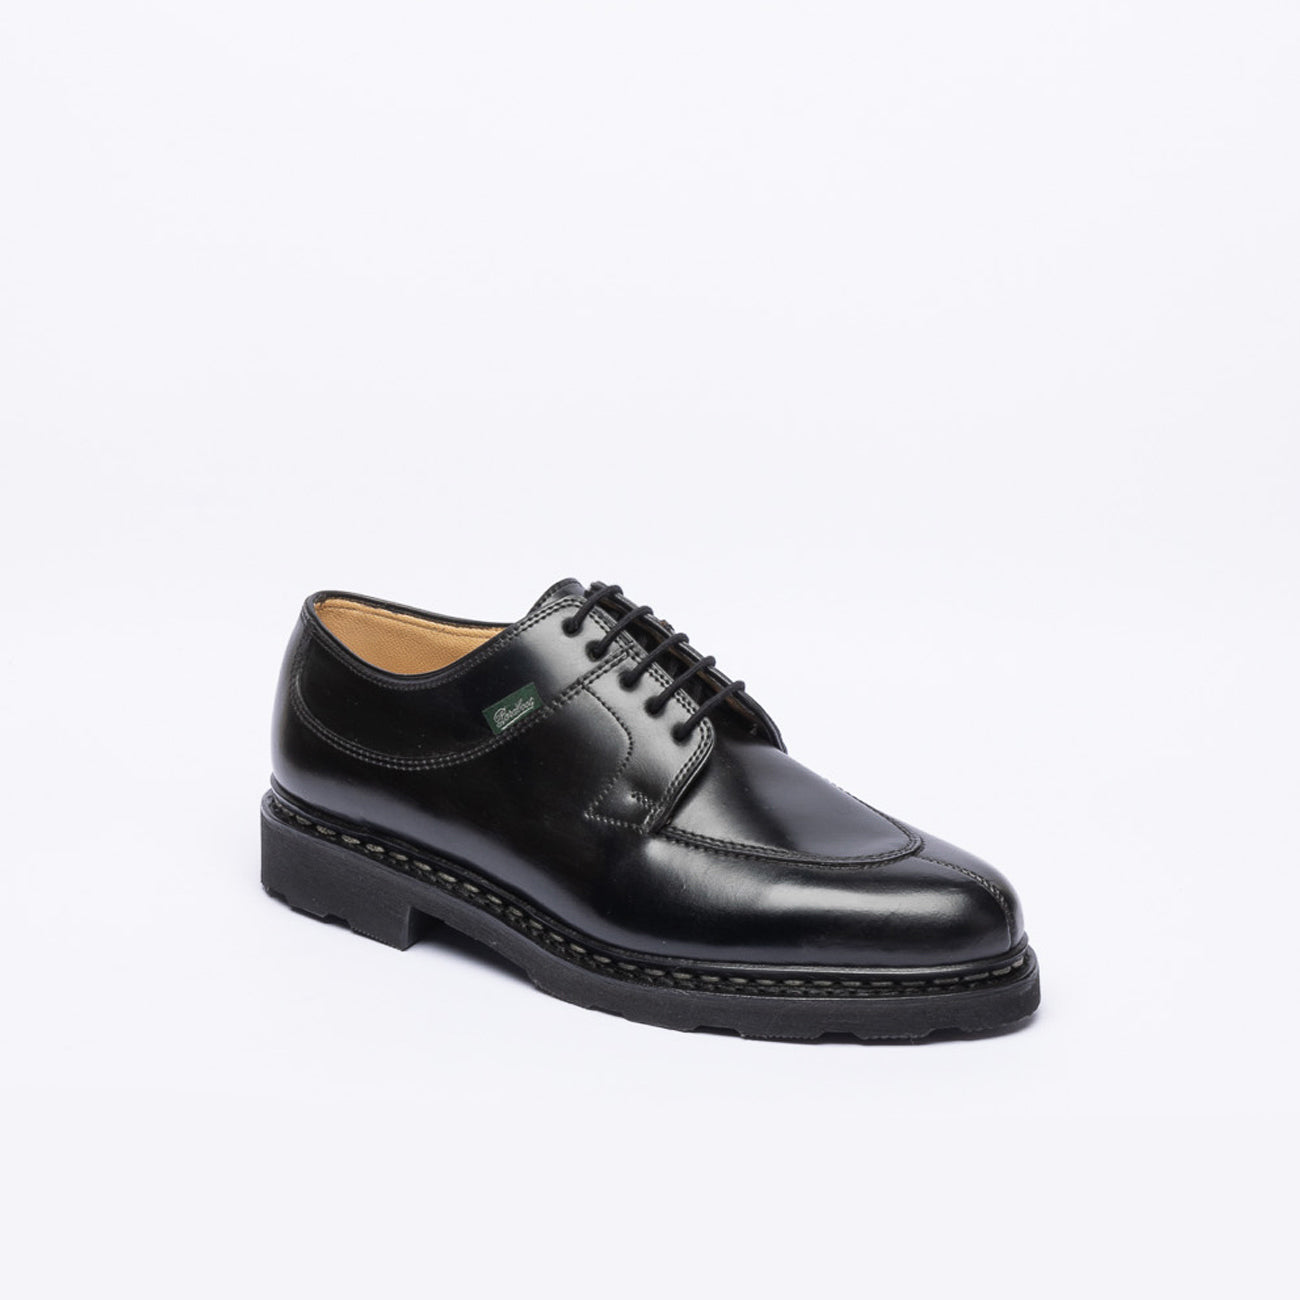 Paraboot black cordovan shoe – Iliprandi Milano